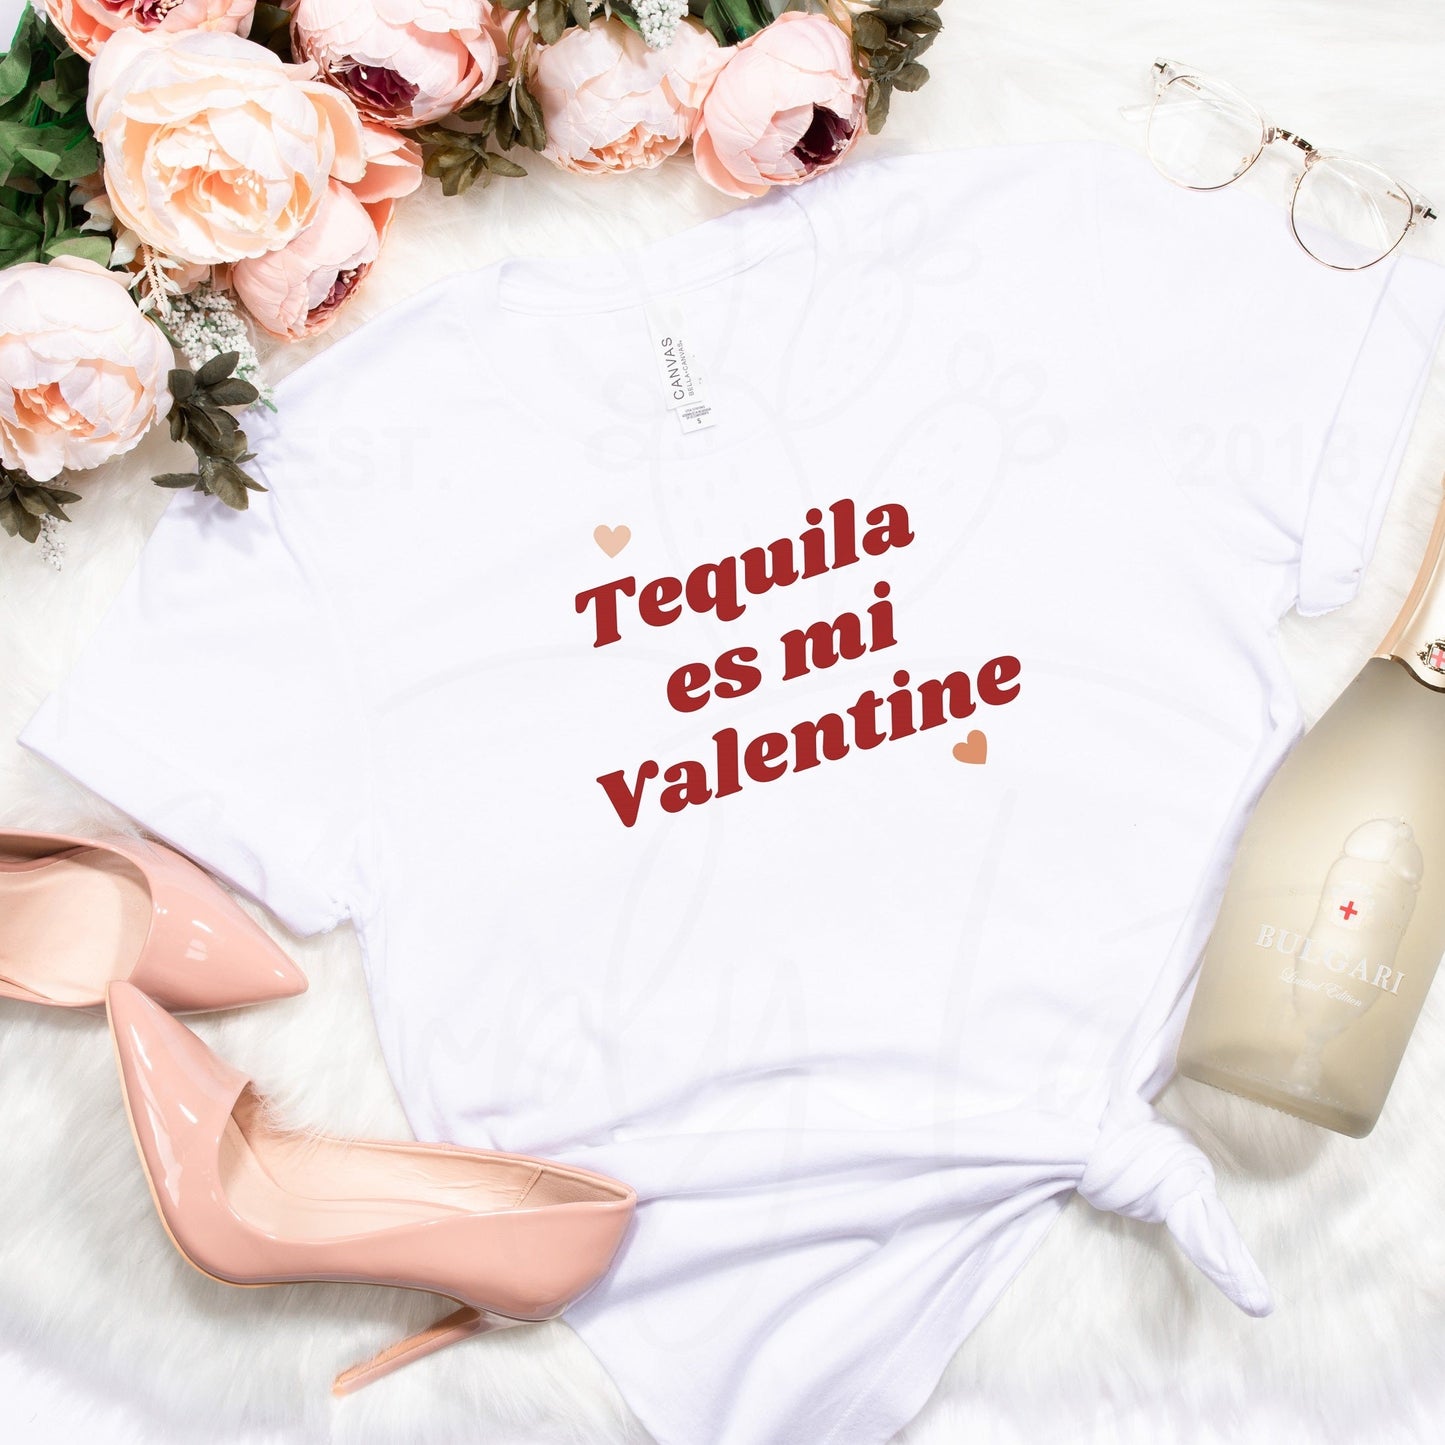 Tequila es mi Valentine Tee